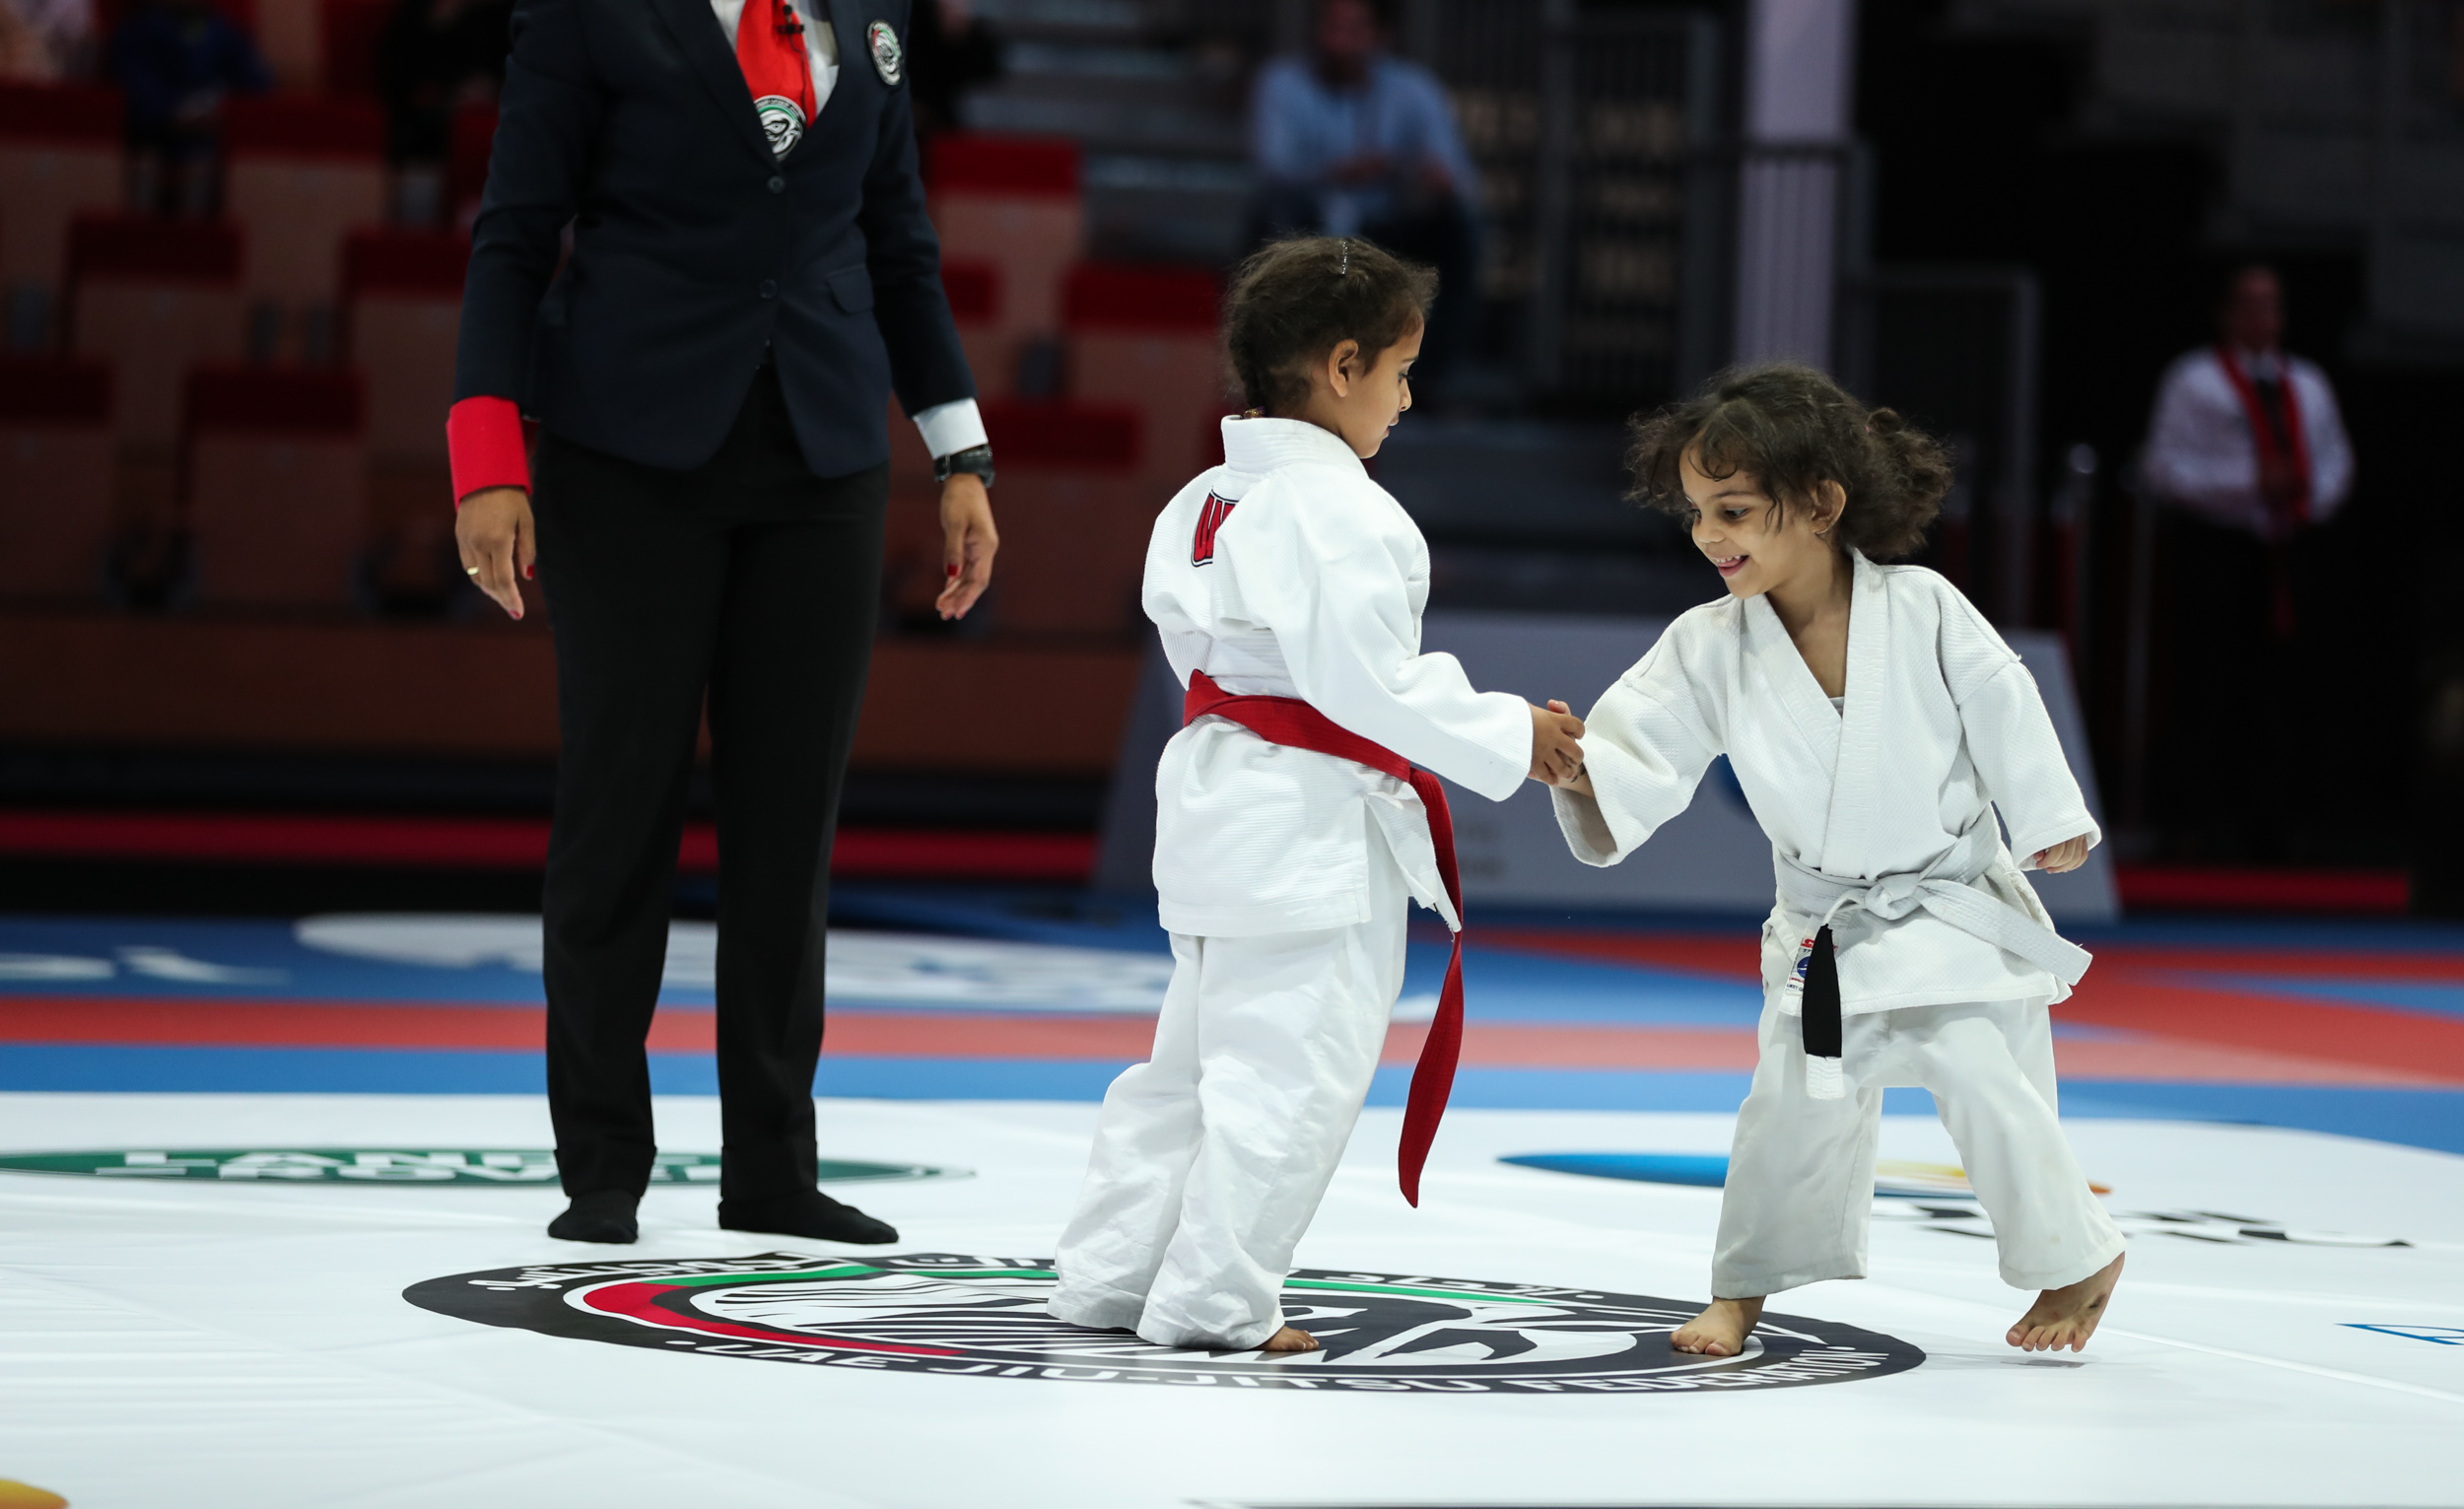 UAE youngsters impress at Jiu-Jitsu World Championship